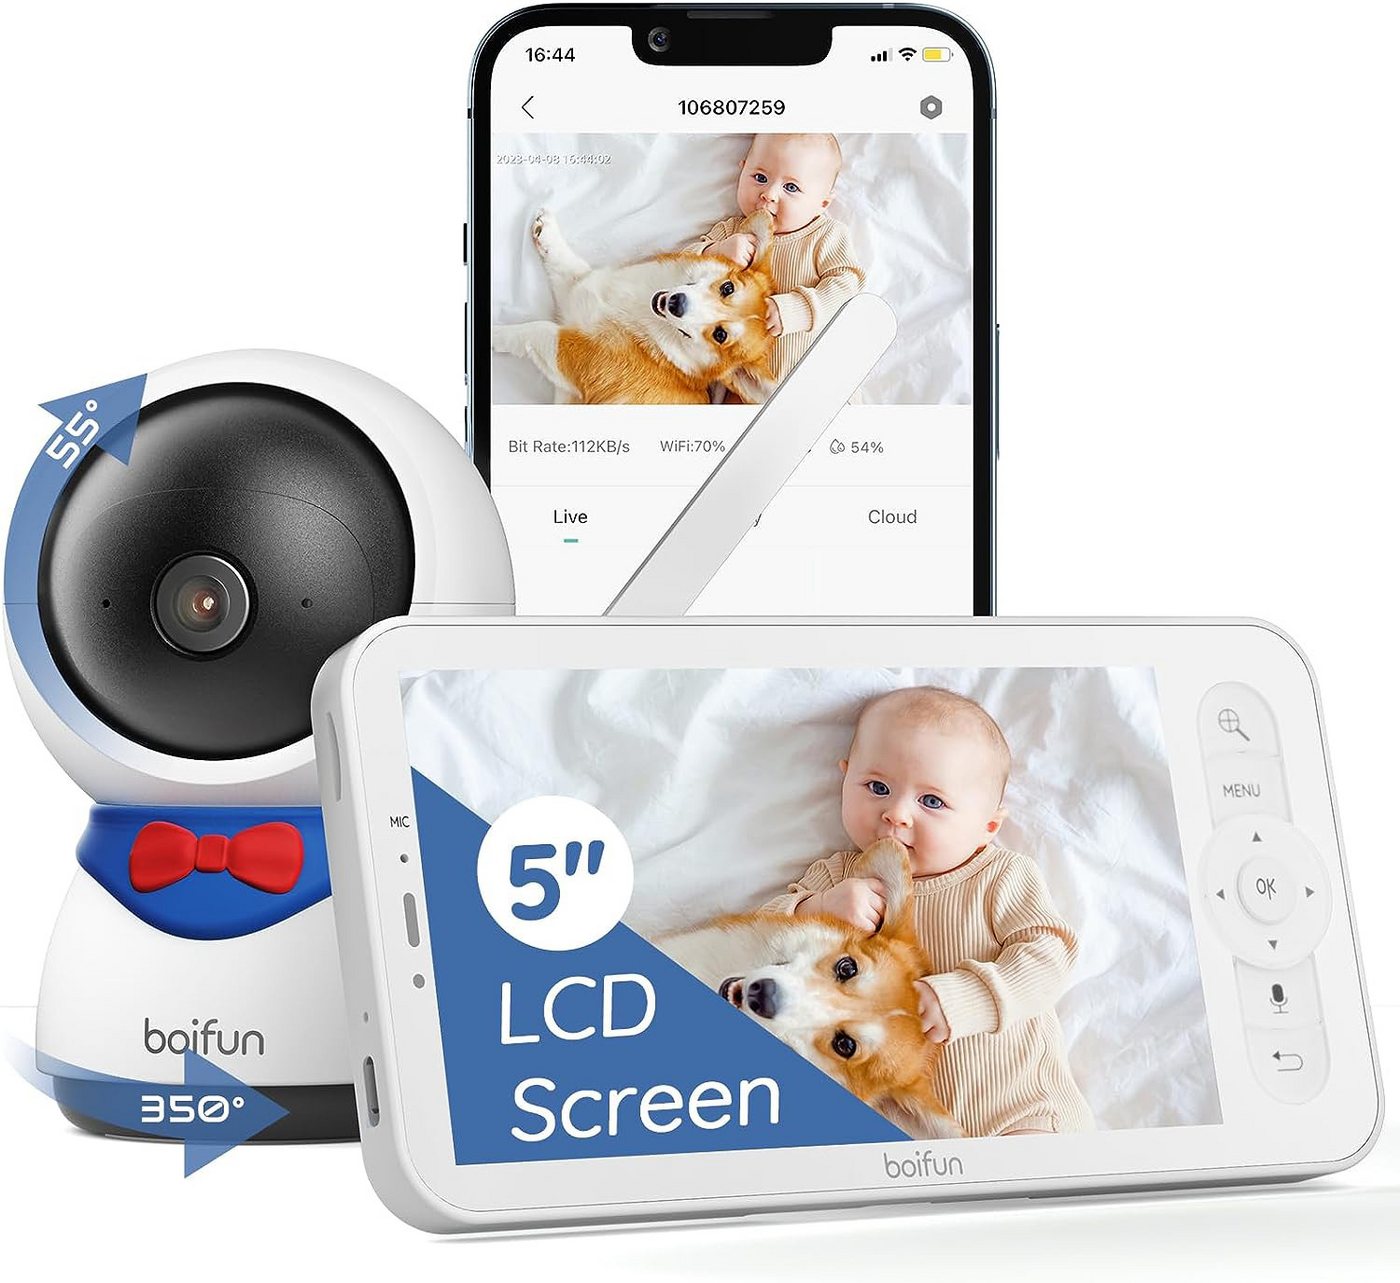 Boifun Babyphone Babyphone mit Kamera ApP 5 Zoll LCD-Display Babyfon PT 350°/55, Automatisches AI-Tracking, Zonenalarme, 1080P HD, 4×Zoom, Zonenalarme, 1-tlg., Bewegungs/Geräuscherkennung,Automatische Verfolgung, 4xVergröBerung,Bereich Alarm von Boifun